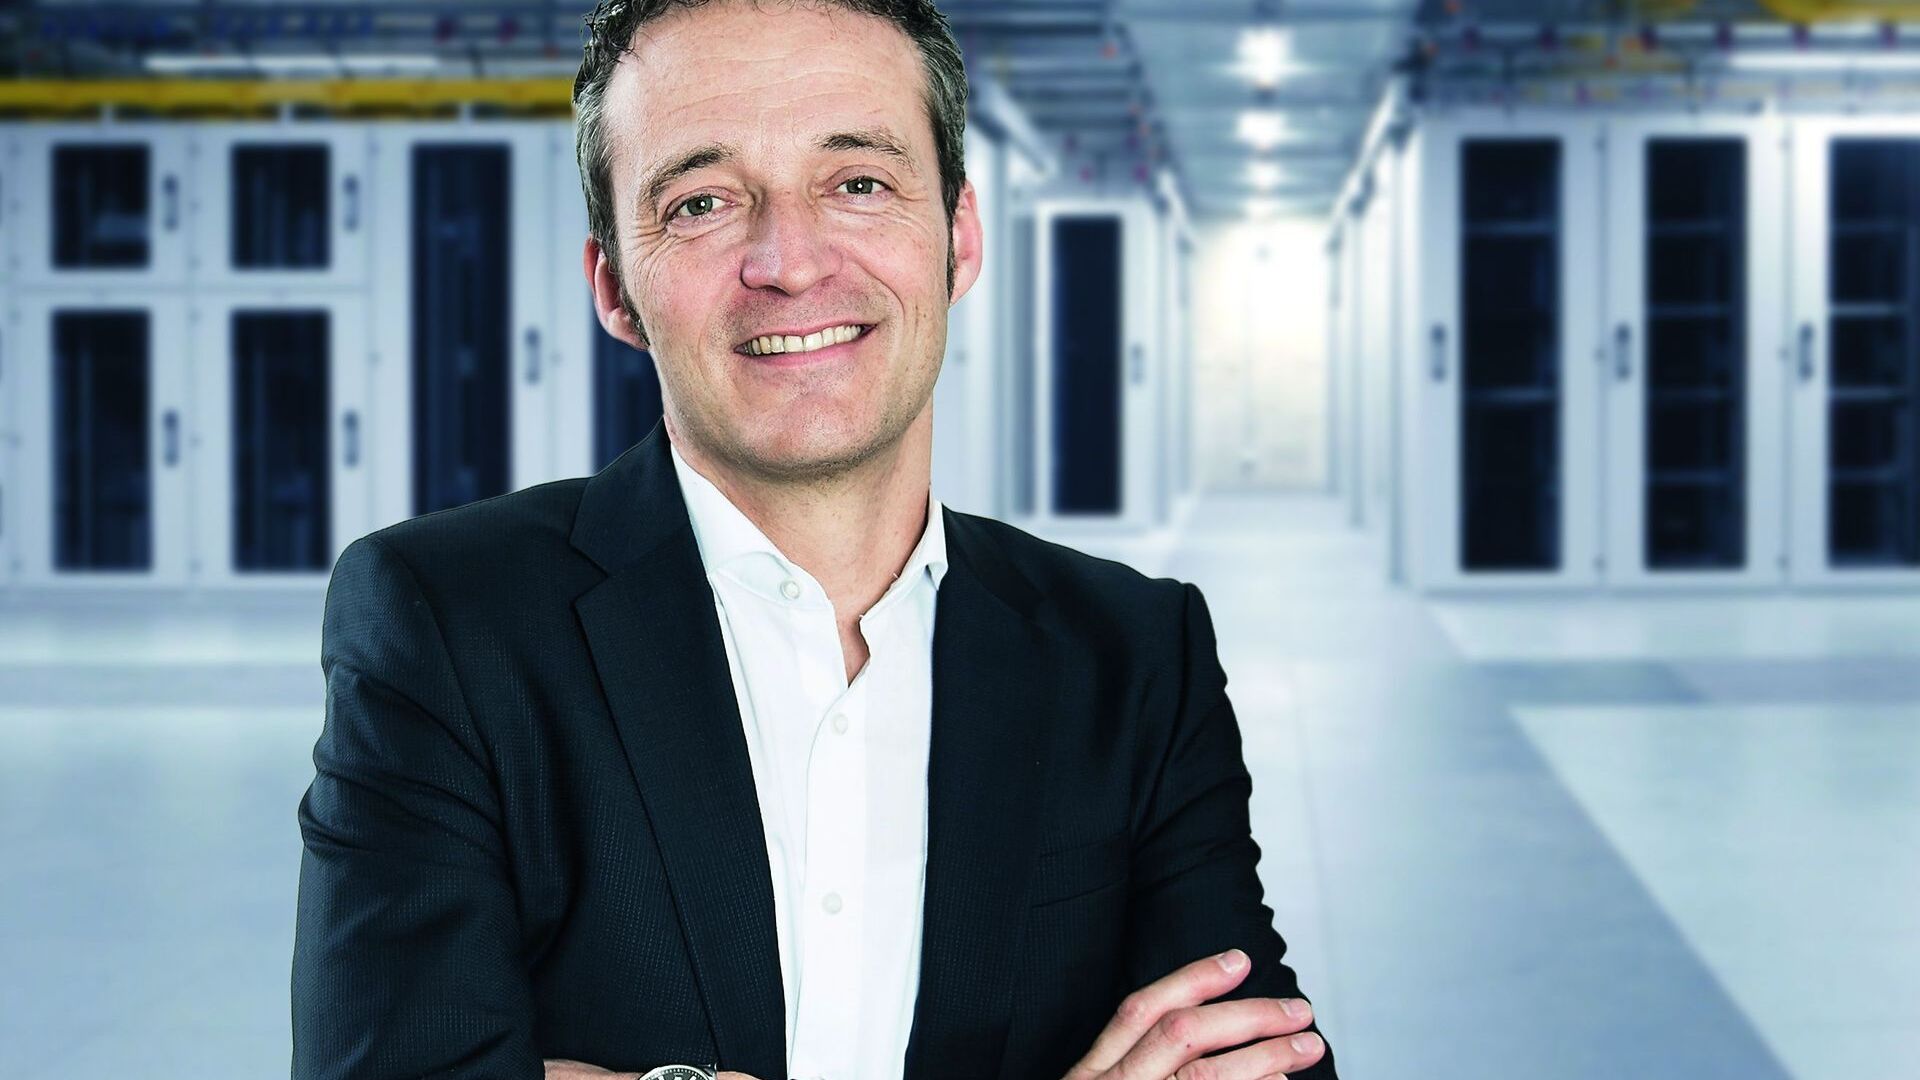 Andreas Schwizer jest kierownikiem działu ICT i członkiem zarządu SAK (St. Gallisch-Appenzellische Kraftwerke AG)